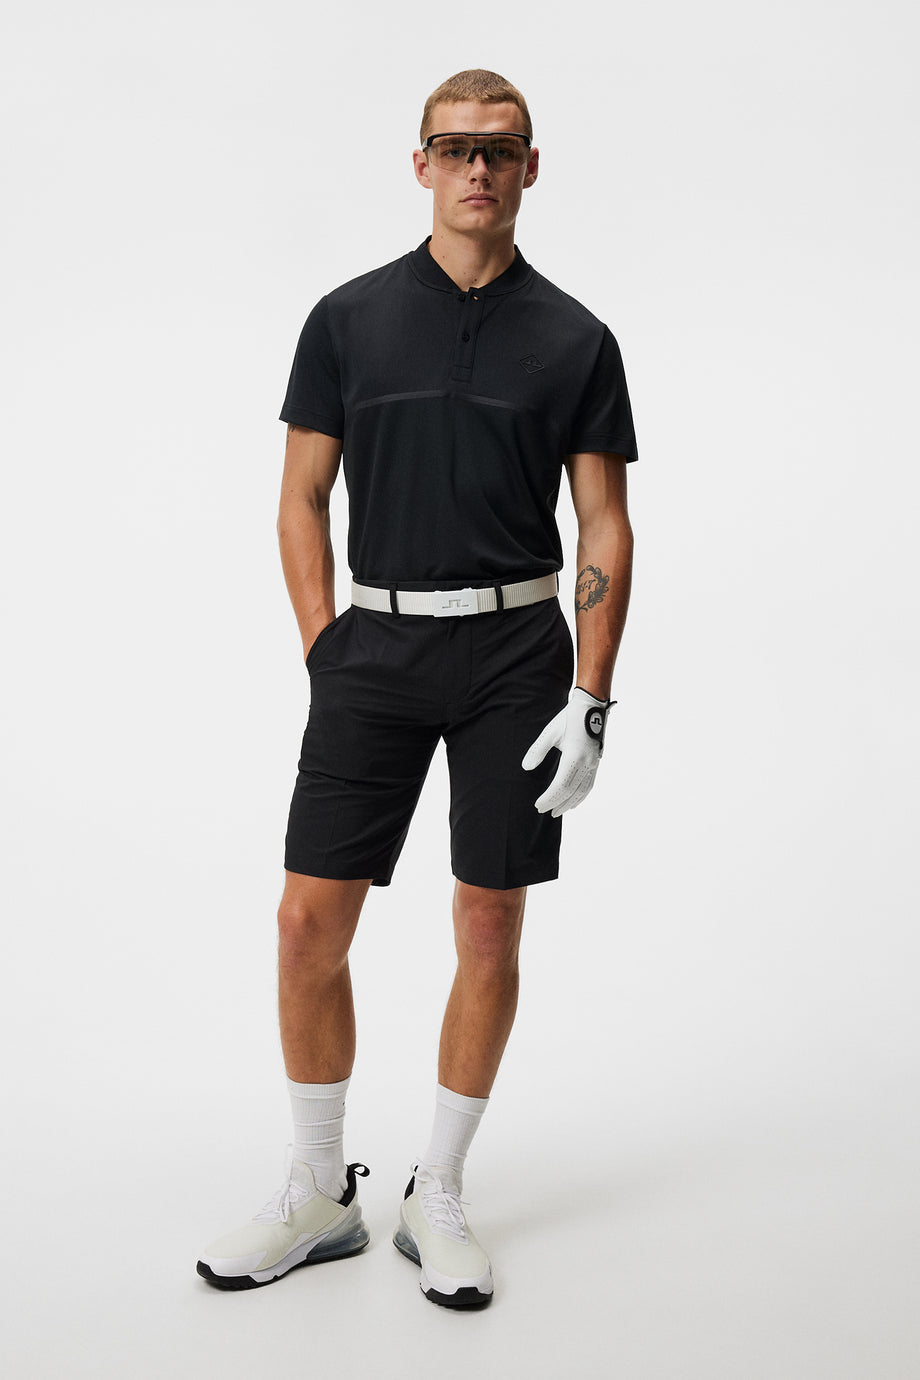 Somle Shorts / Black – J.Lindeberg